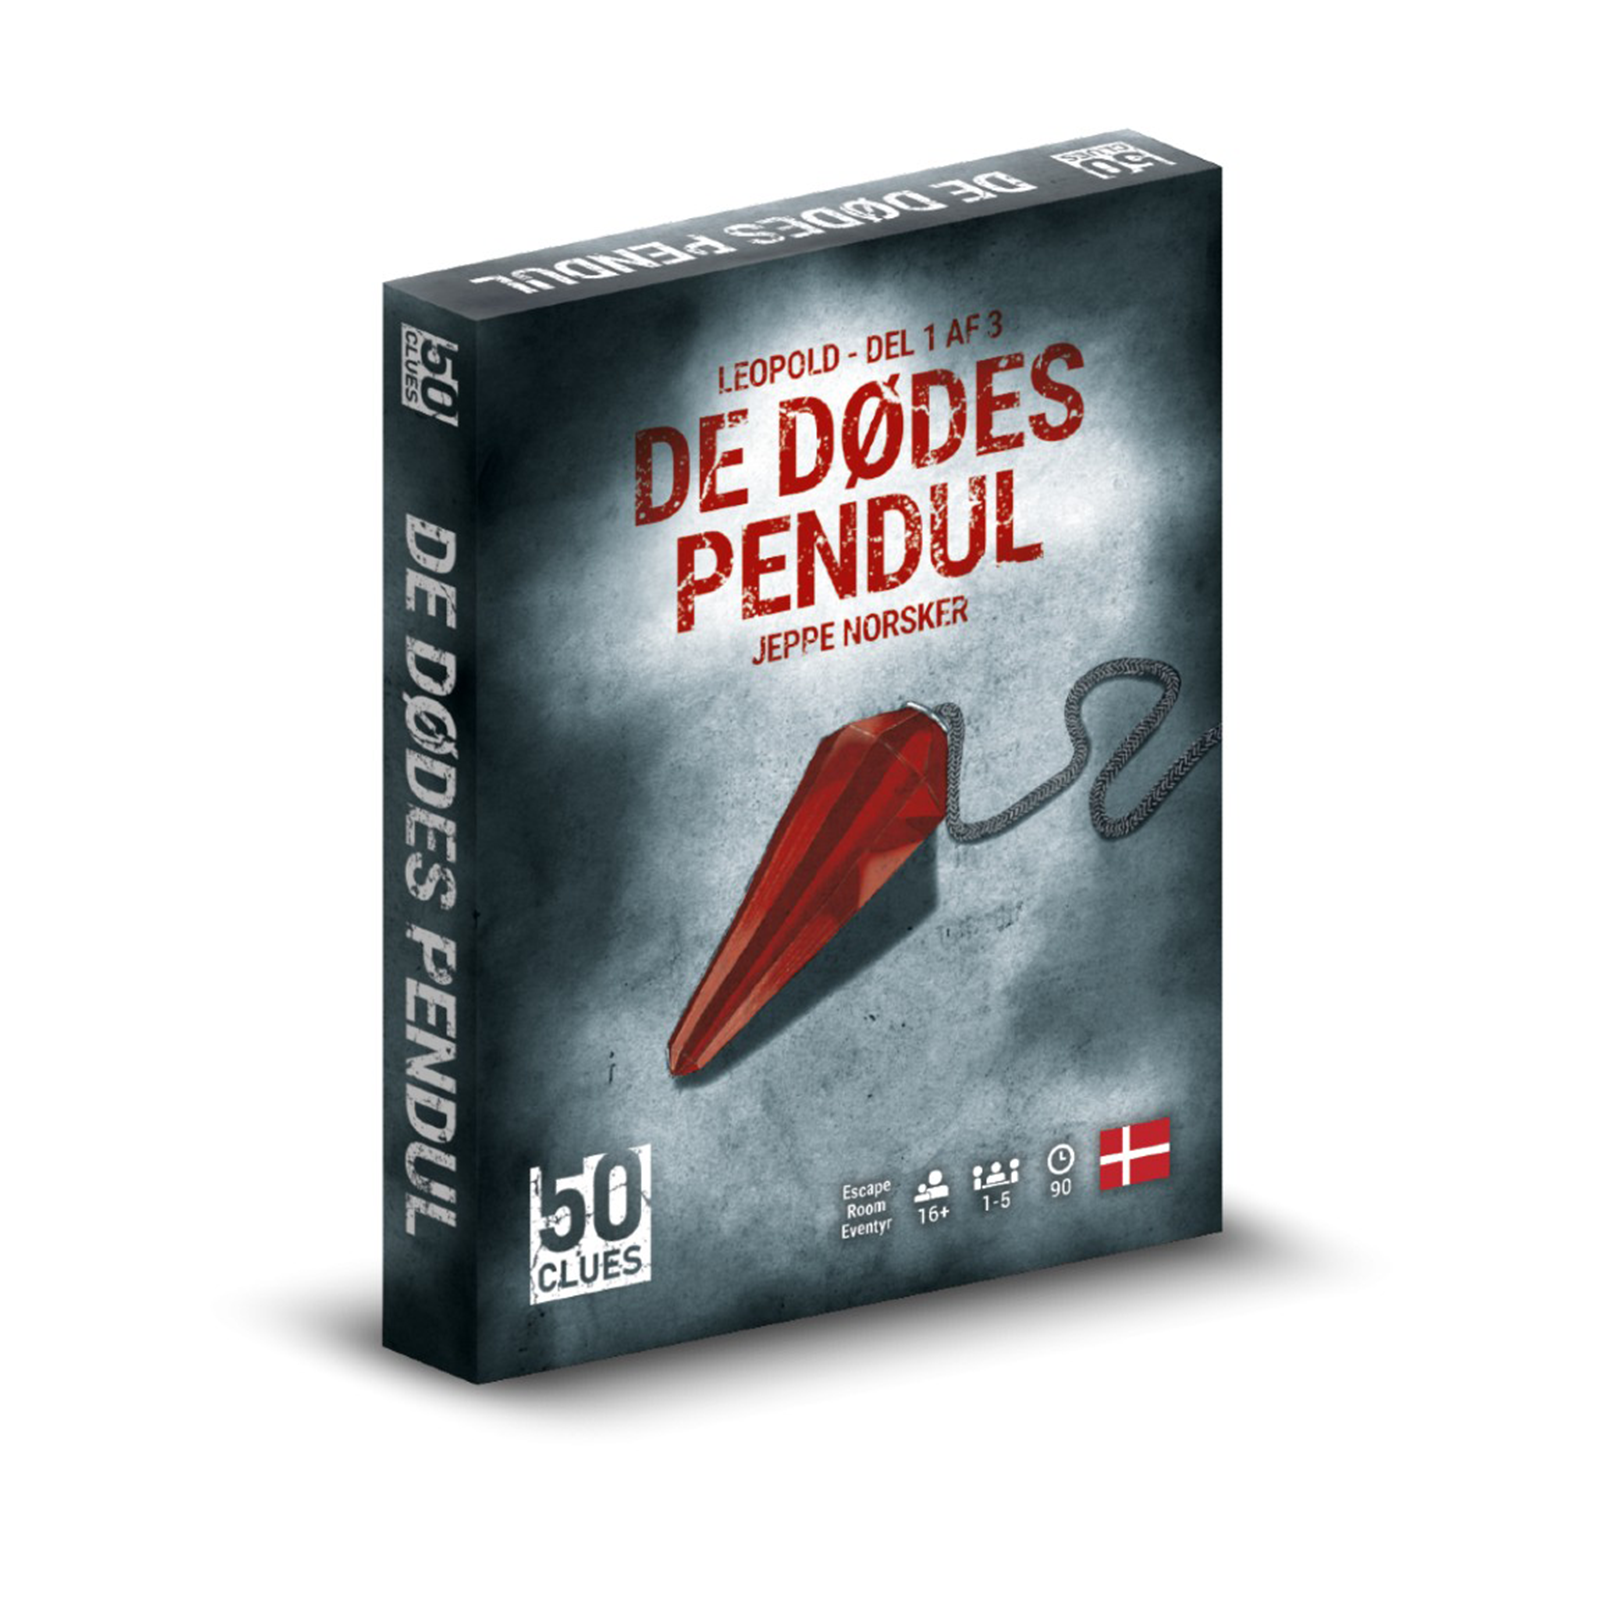 Se 50 Clues (Leopold) De Dødes Pendul (del 1 af 3) hos Lad-os-Spille.dk